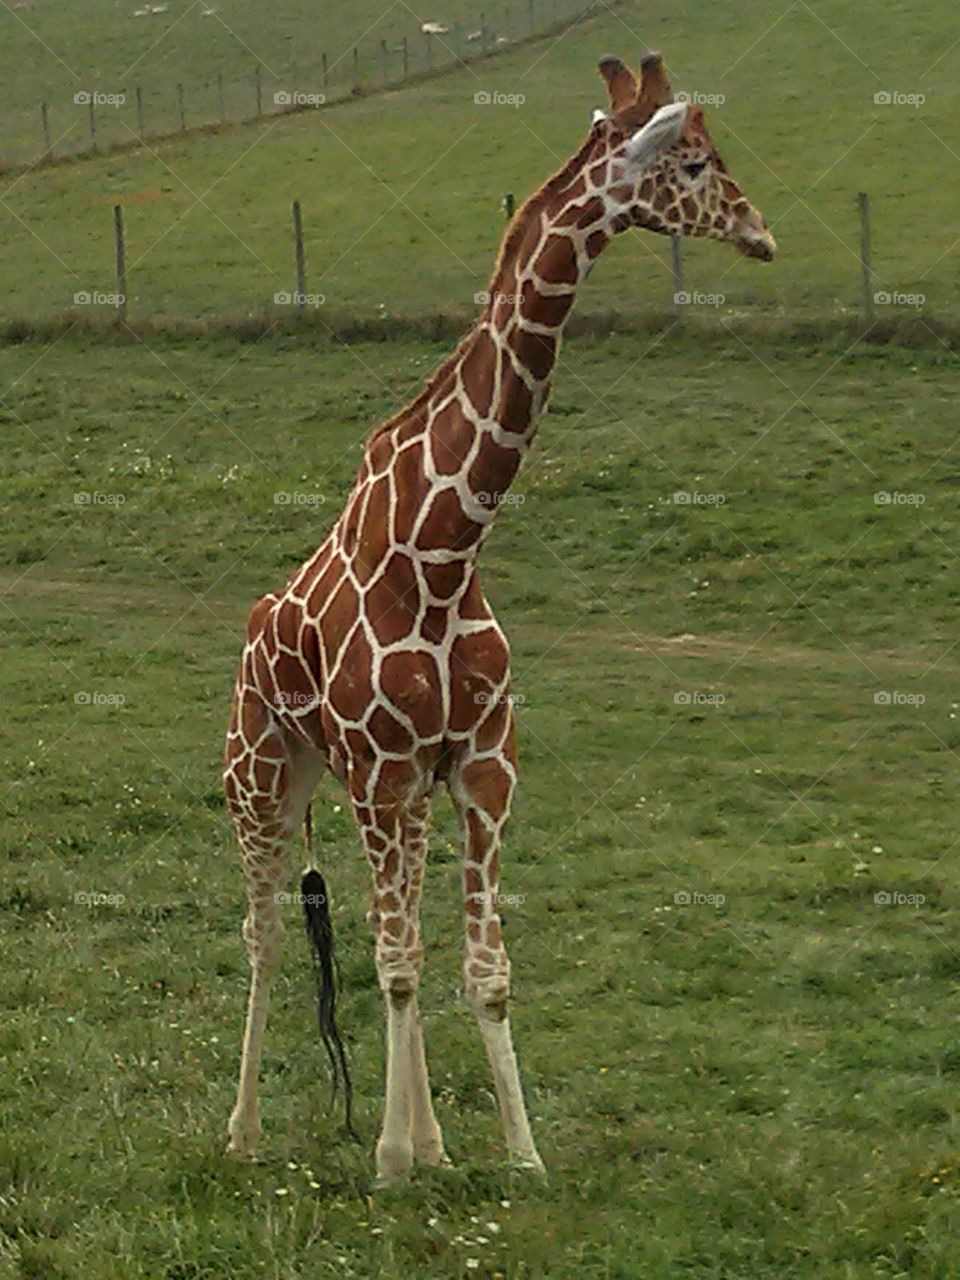 Giraffe at The Wilds. Giraffe standing